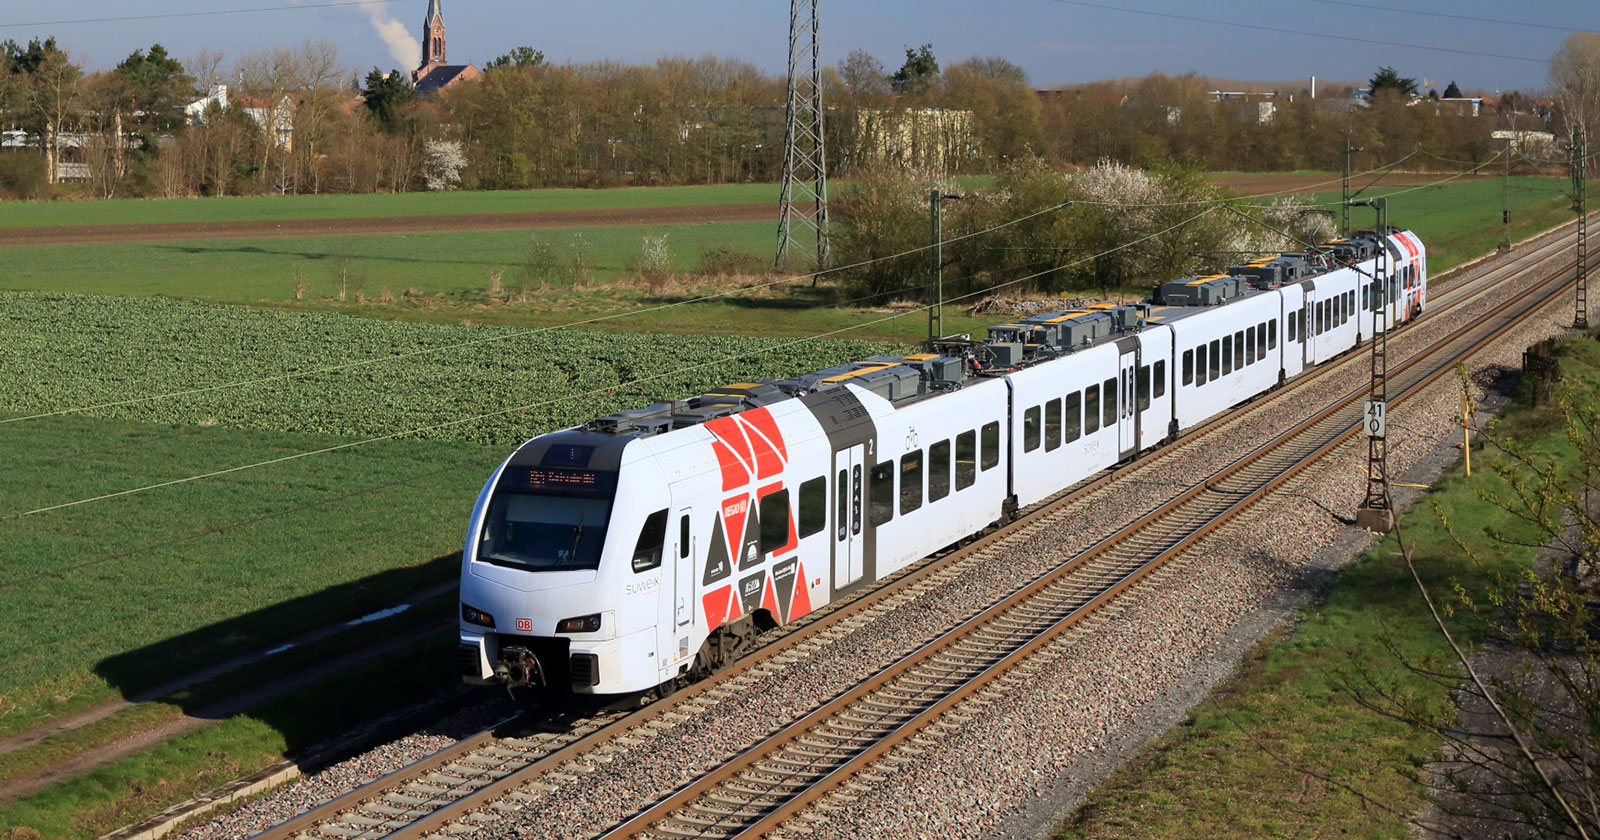 Wabtec and Deutsche Bahn Sign New Contract, Building Upon Longstanding Partnership